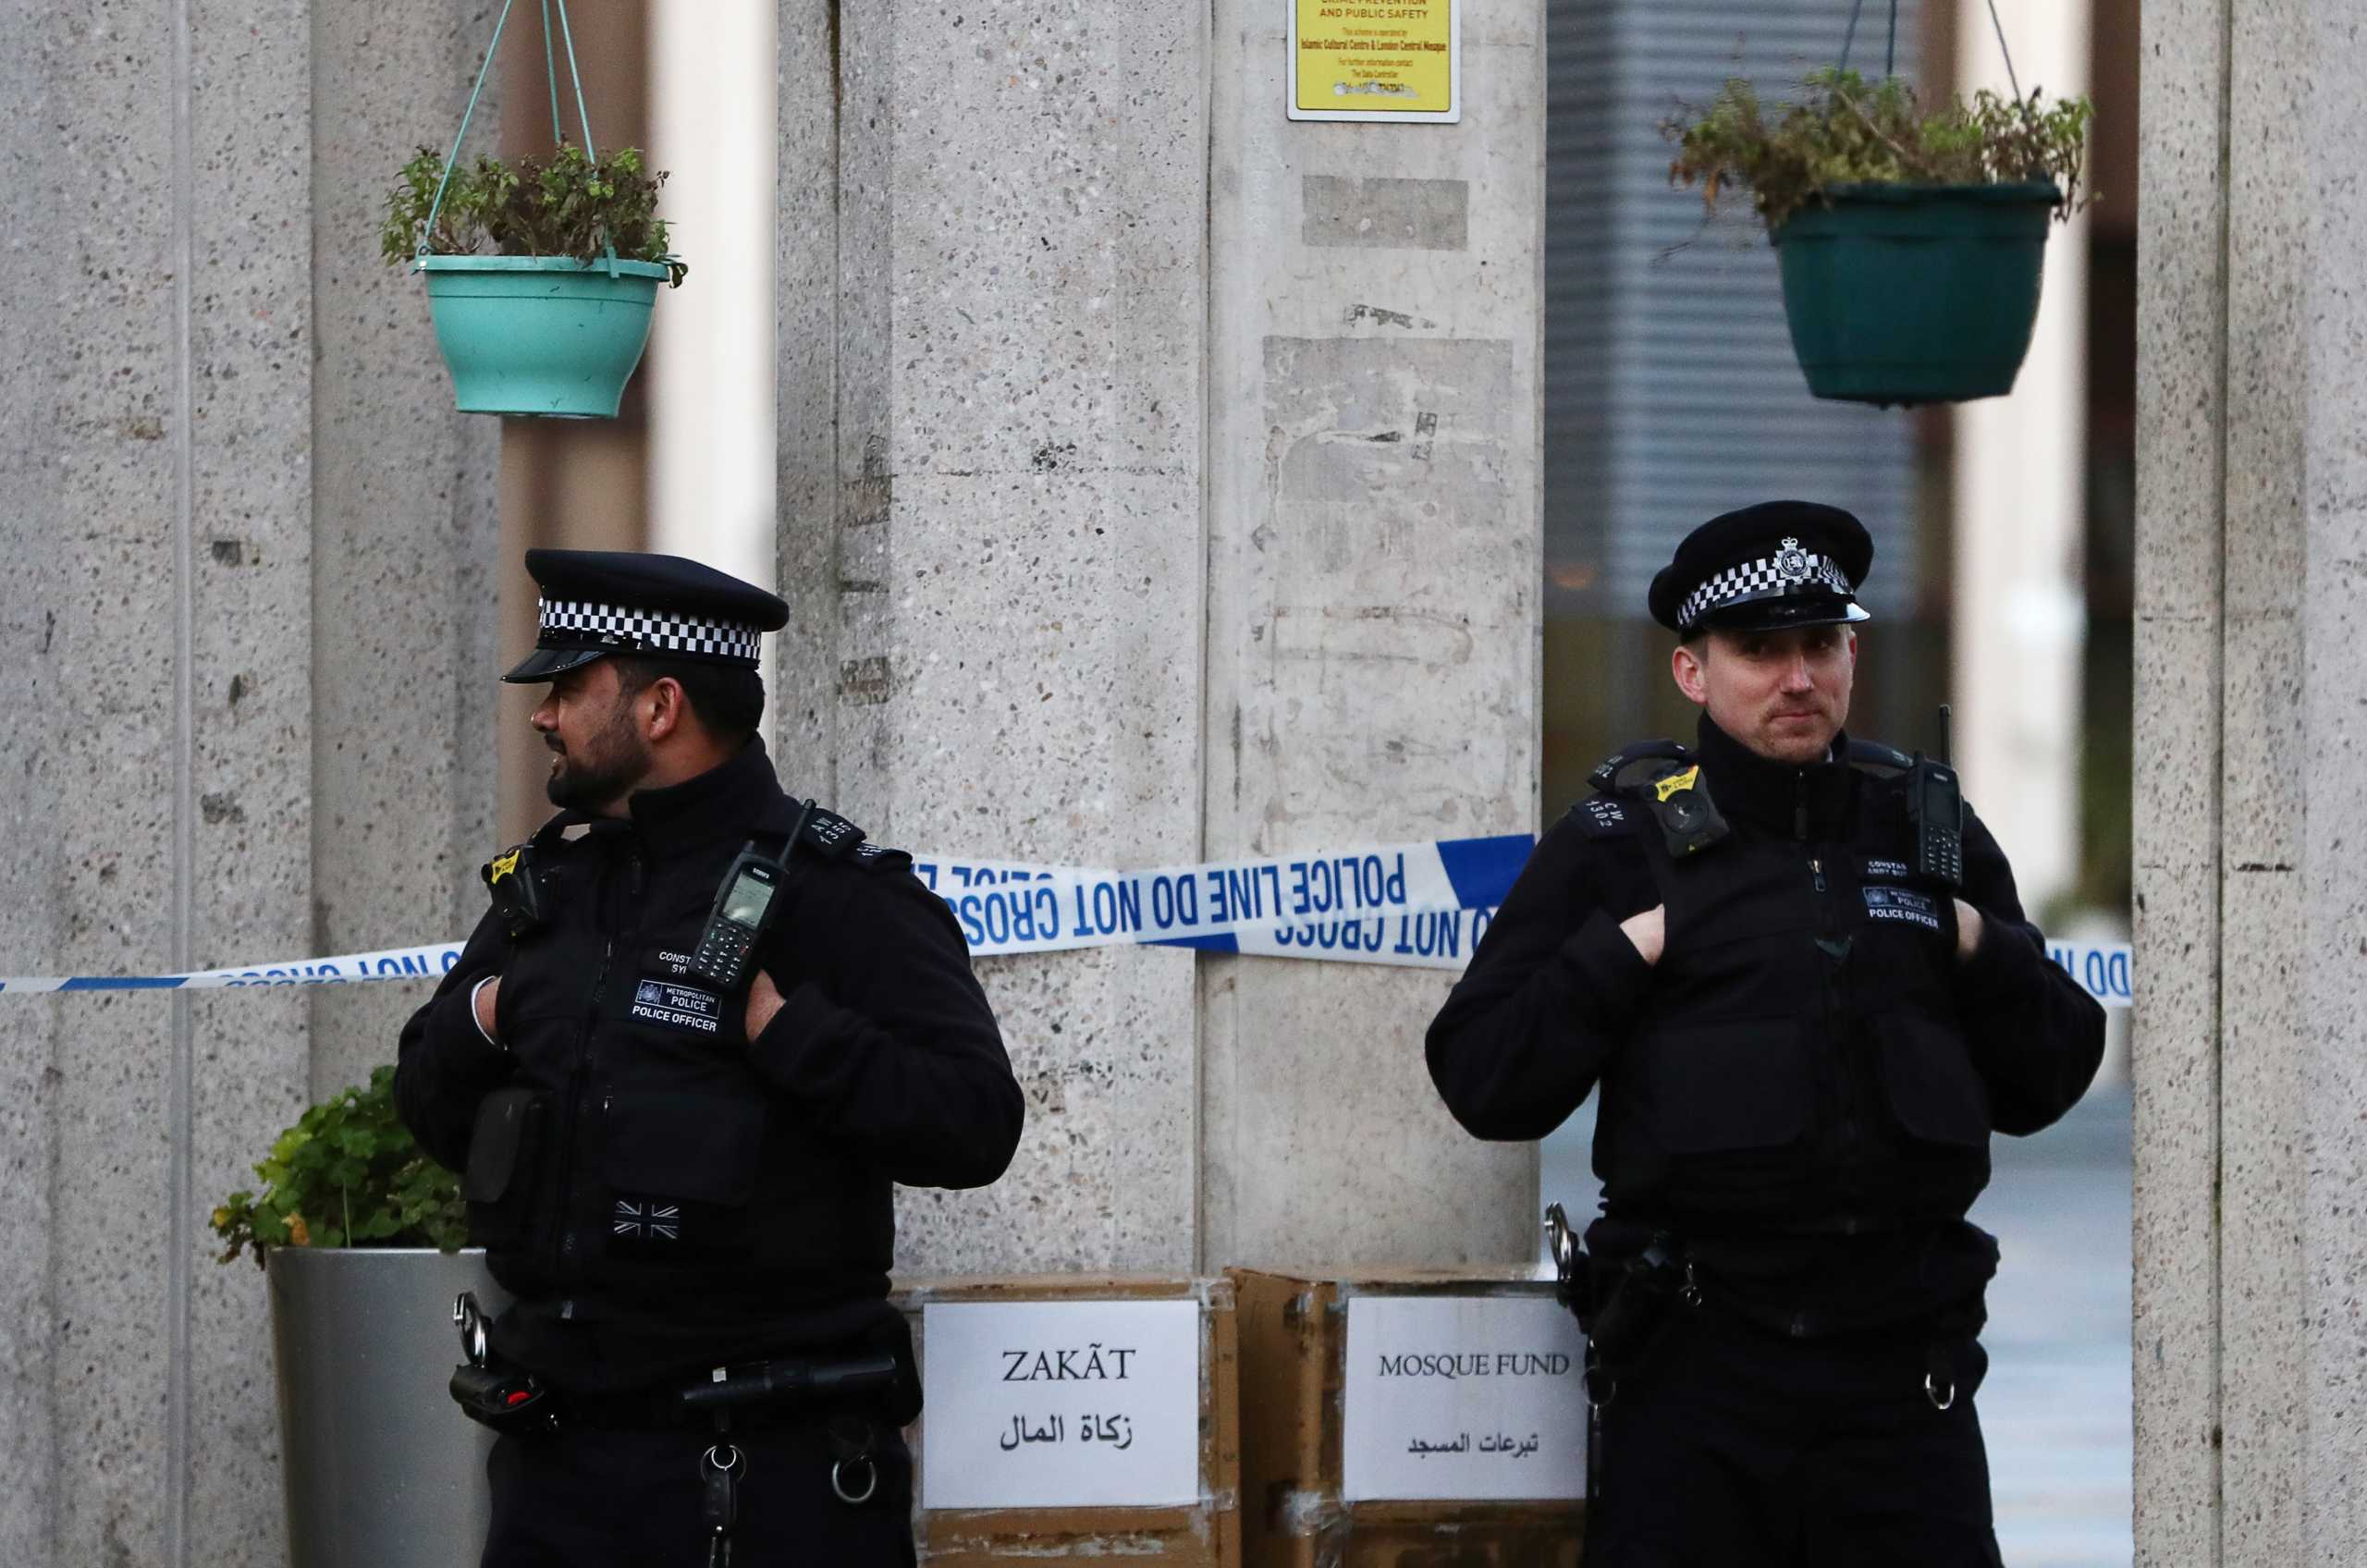 Βρετανία: Αστυνομικοί σκότωσαν άνδρα που έβγαλε δύο μαχαίρια